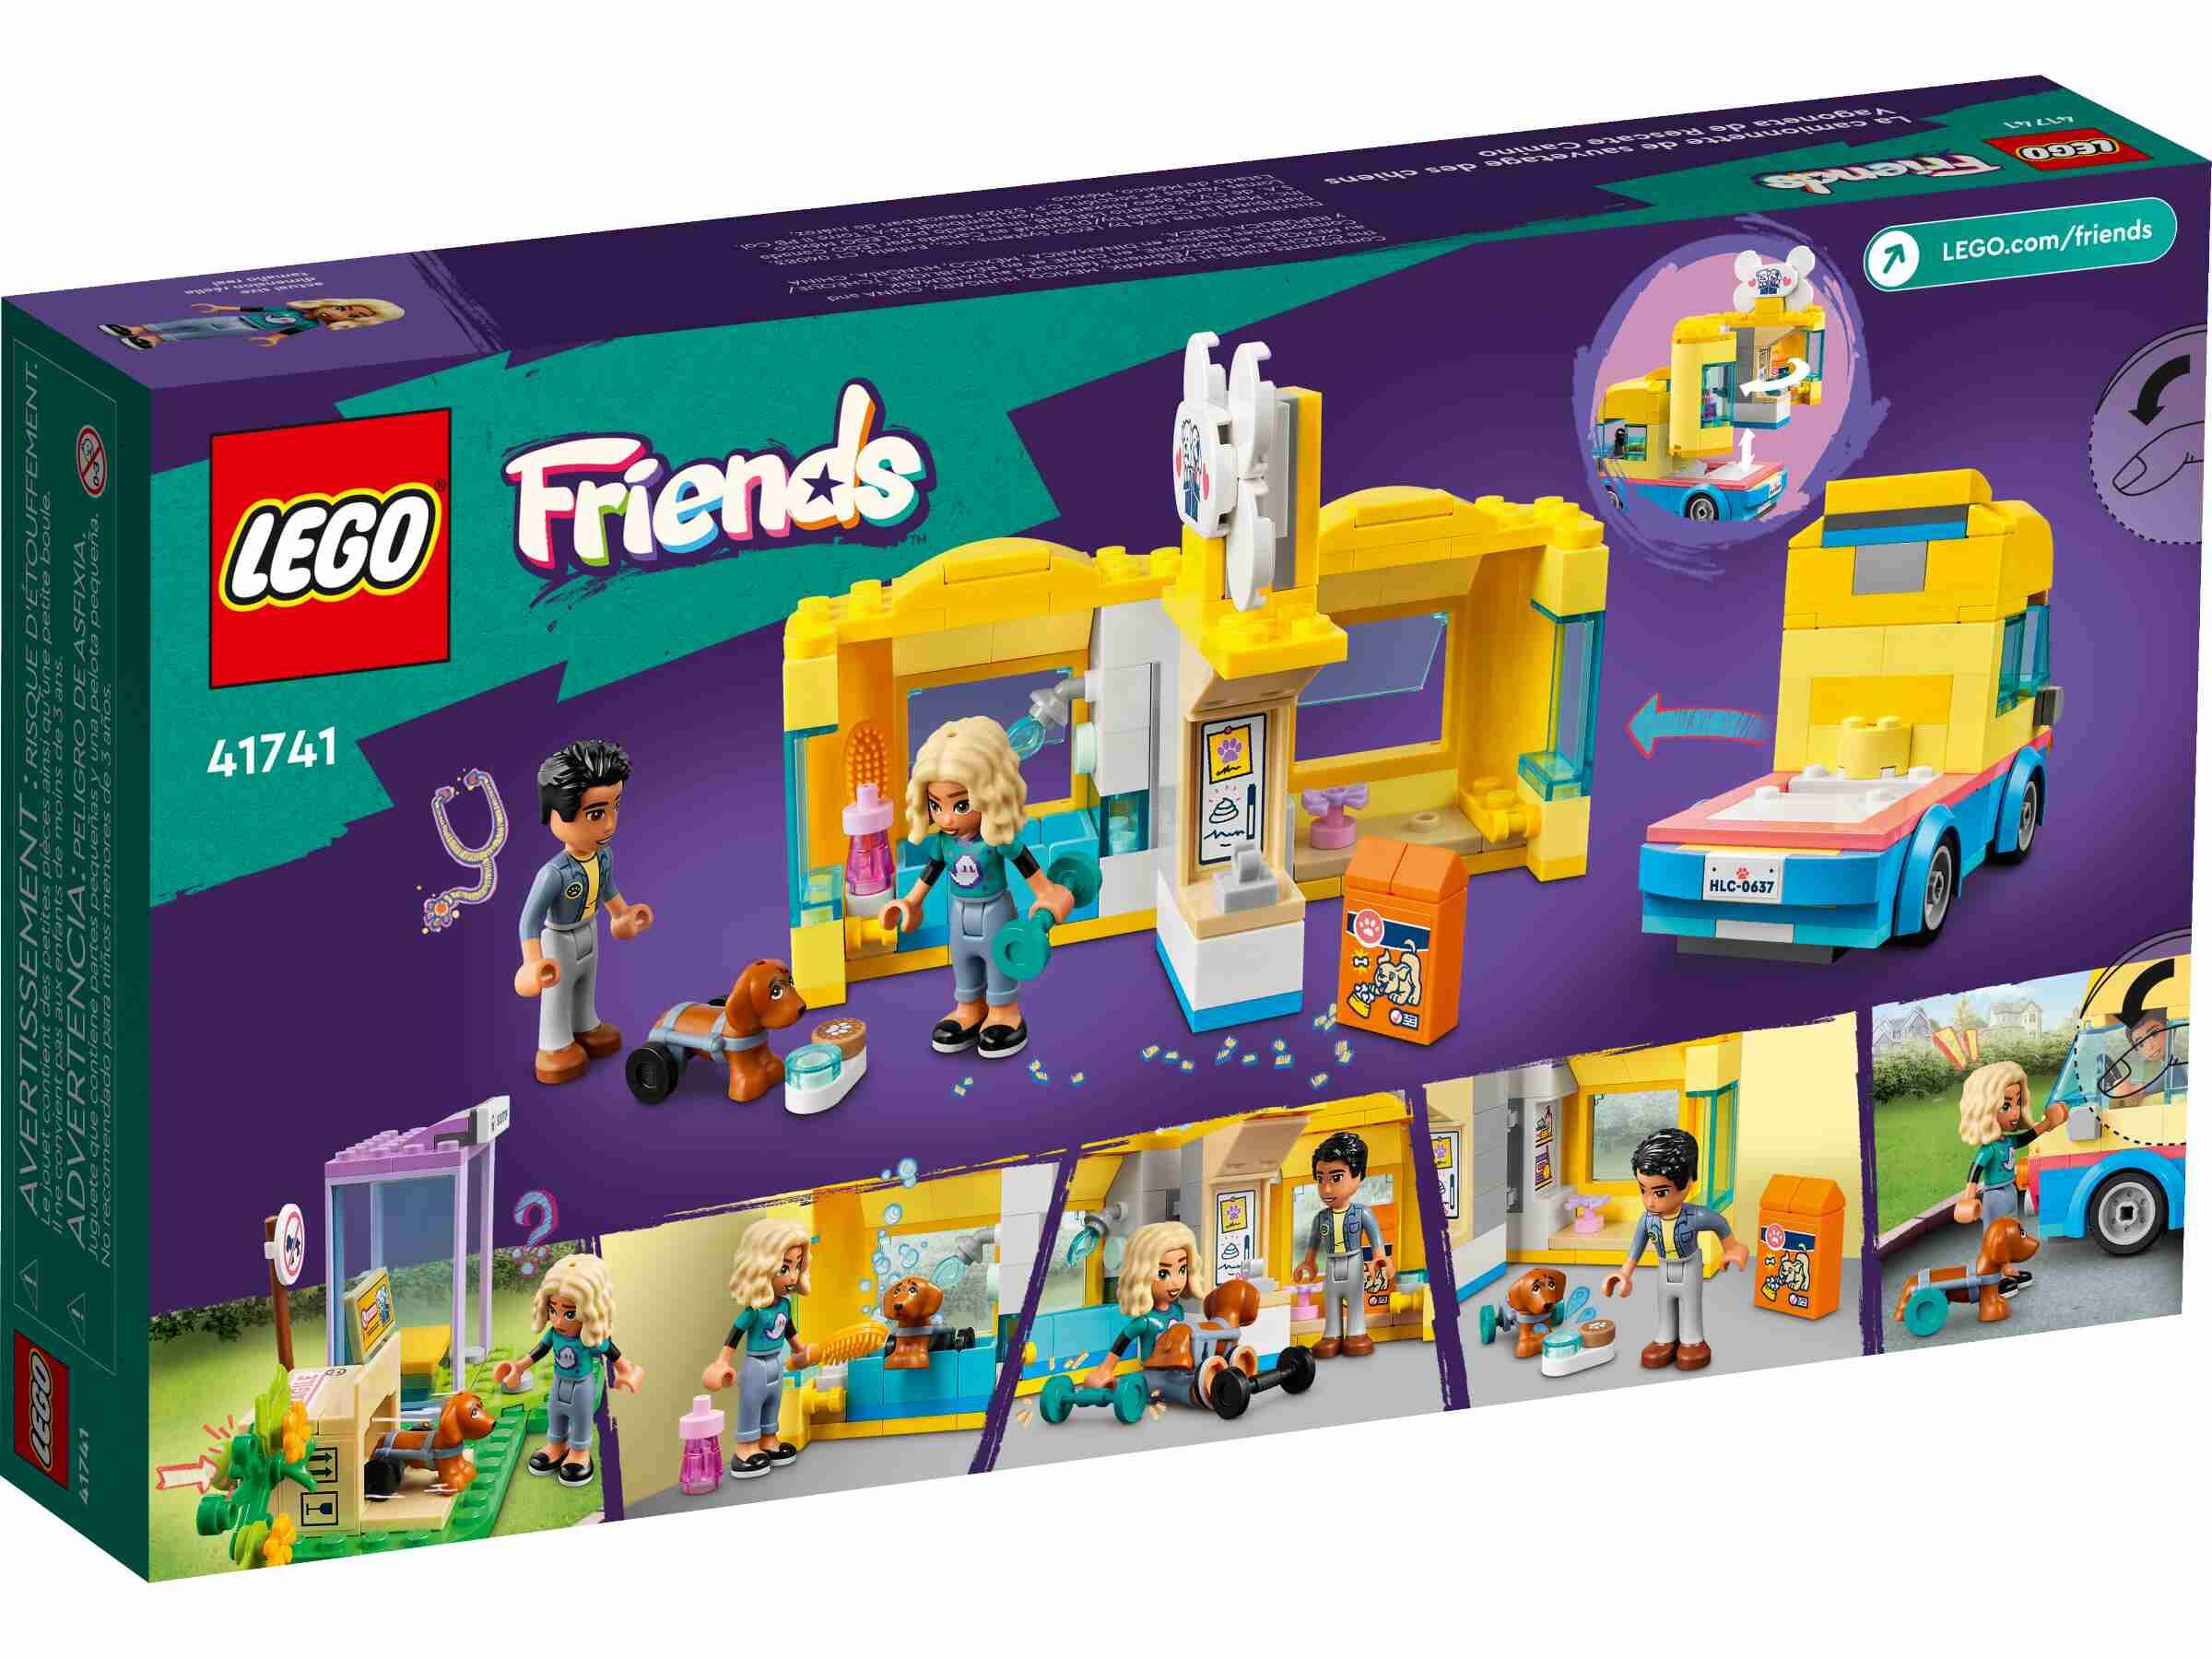 LEGO 41741 Friends Hunderettungswagen, Nova und Dr. Marlon, Hund Pickle